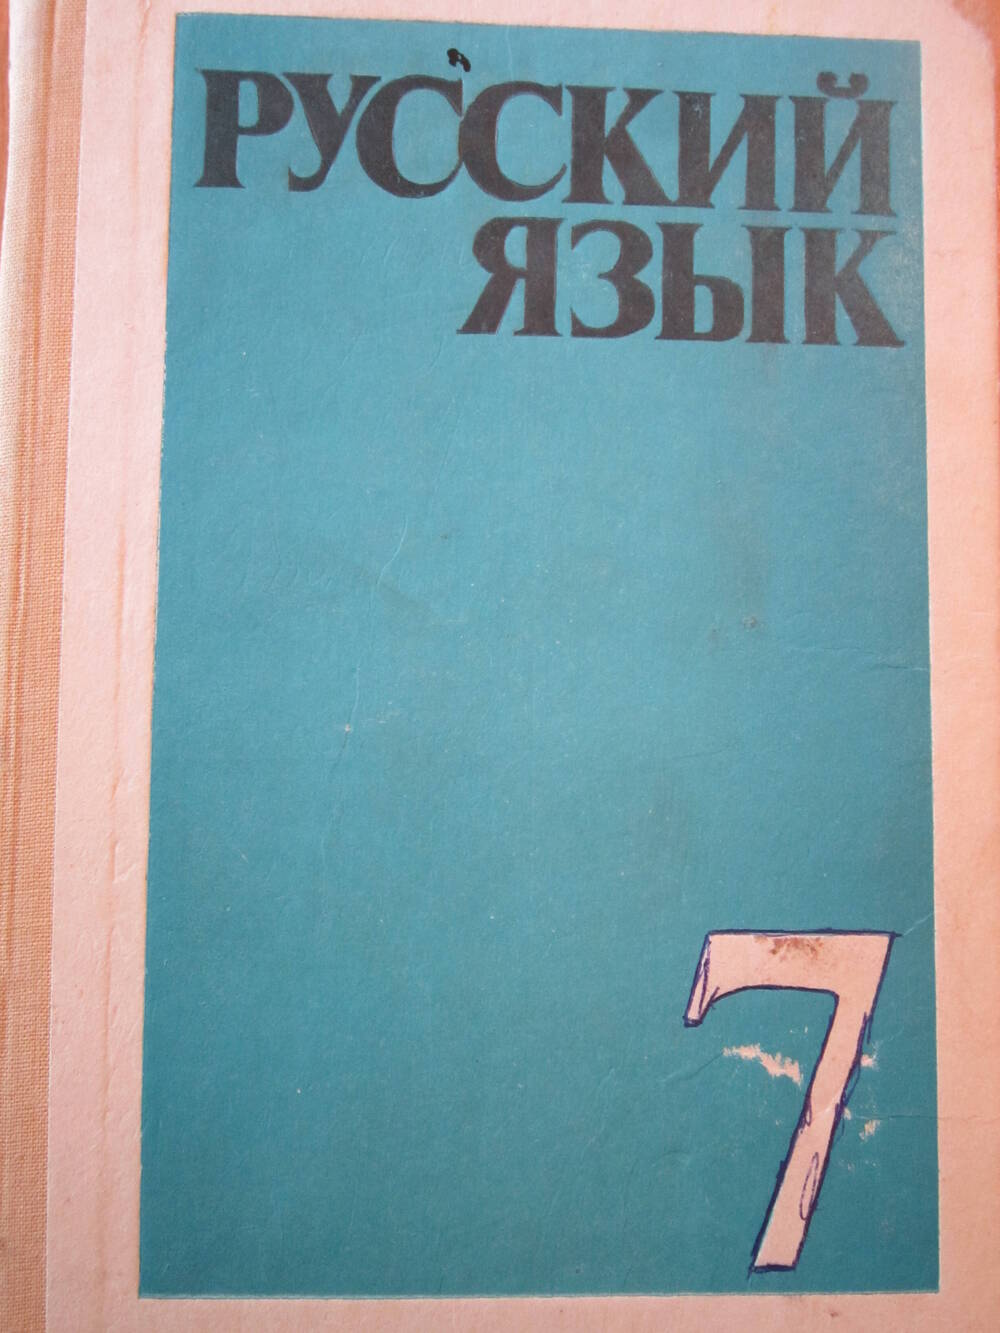 Книга «Русский язык»  Учебник для 7-го класса средней школы.